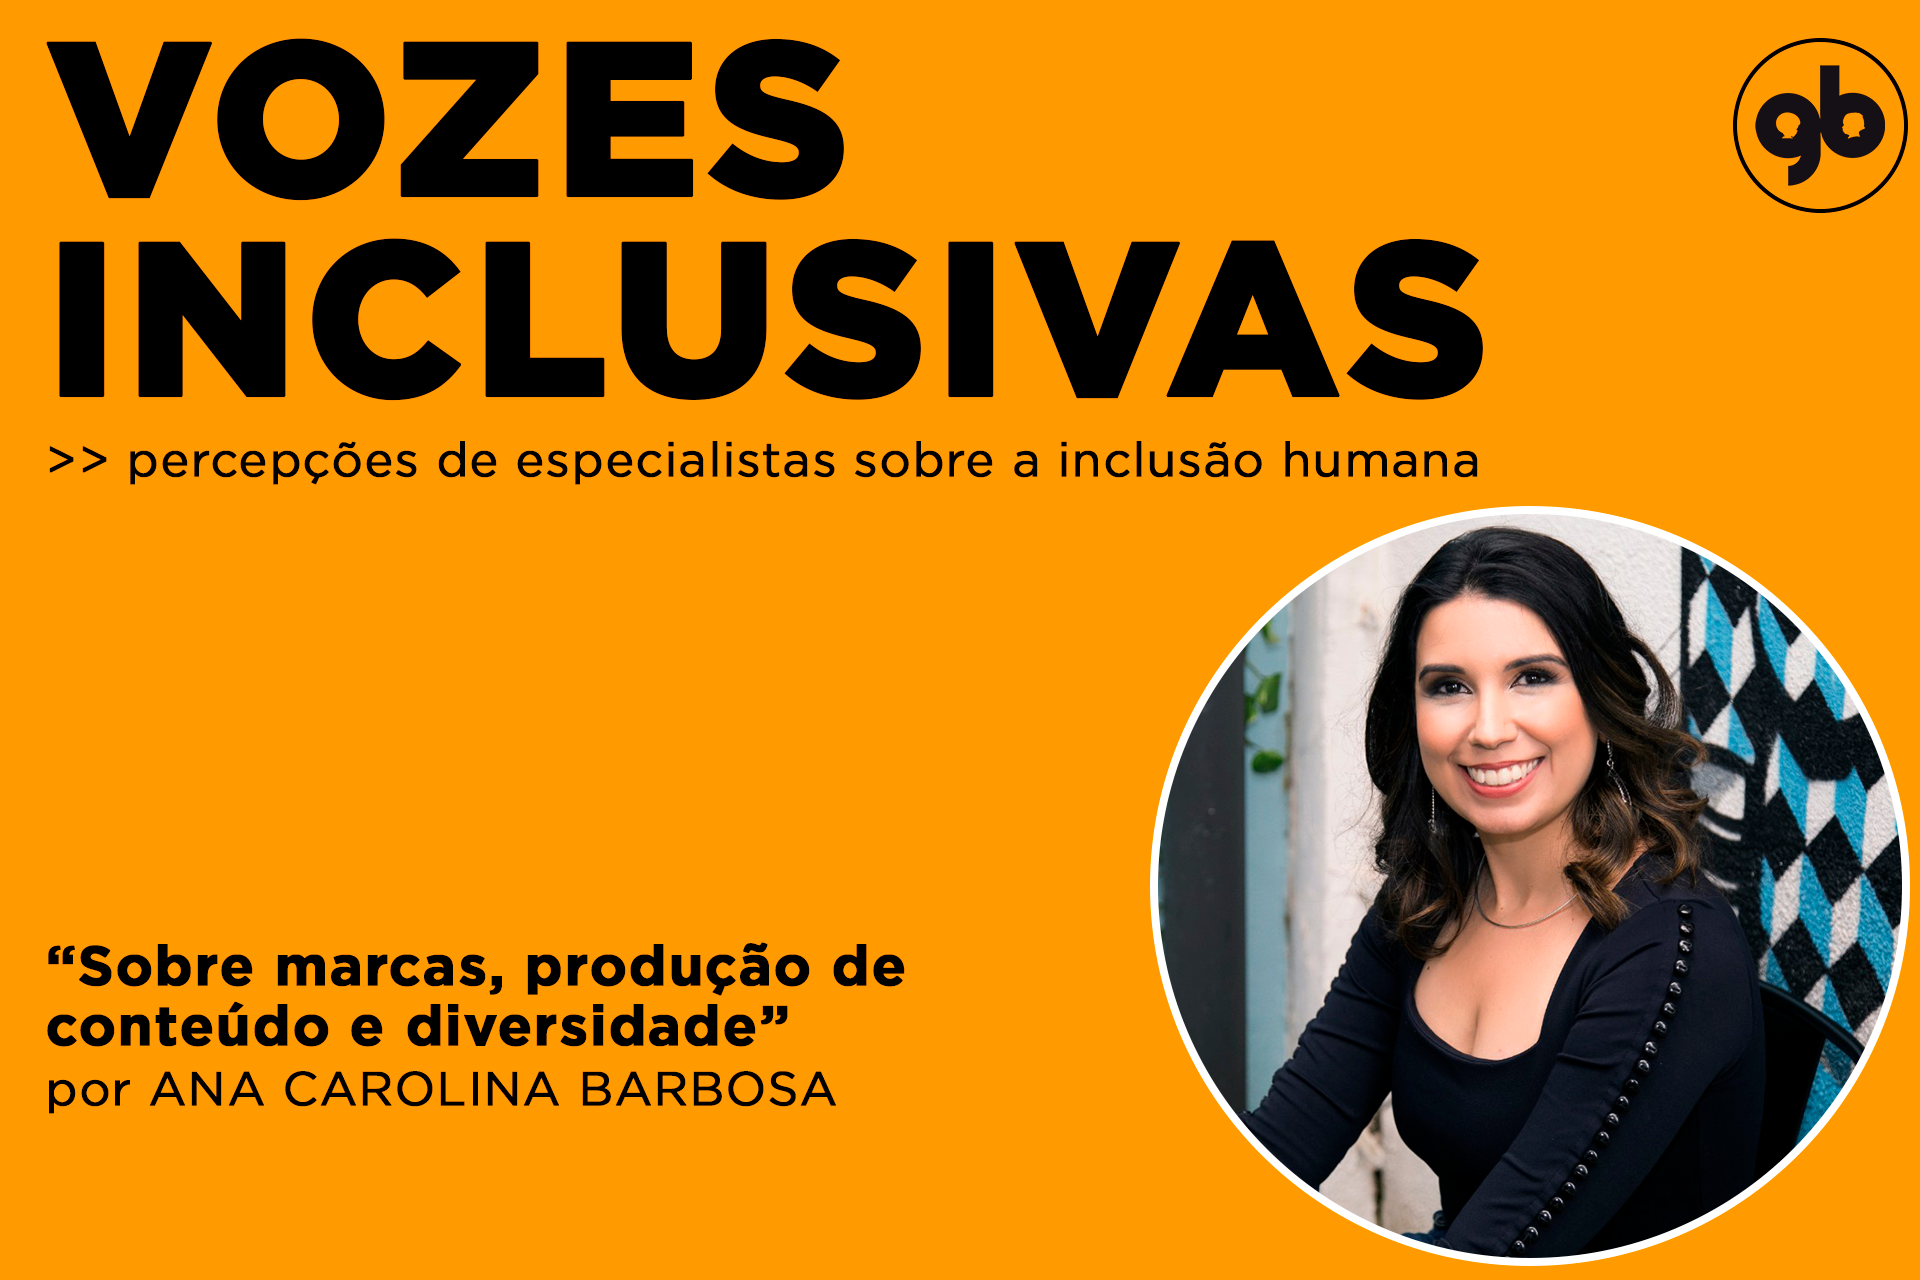 sobre fundo laranja, título Vozes inclusivas em preto com foto circular de Ana ao lado direito